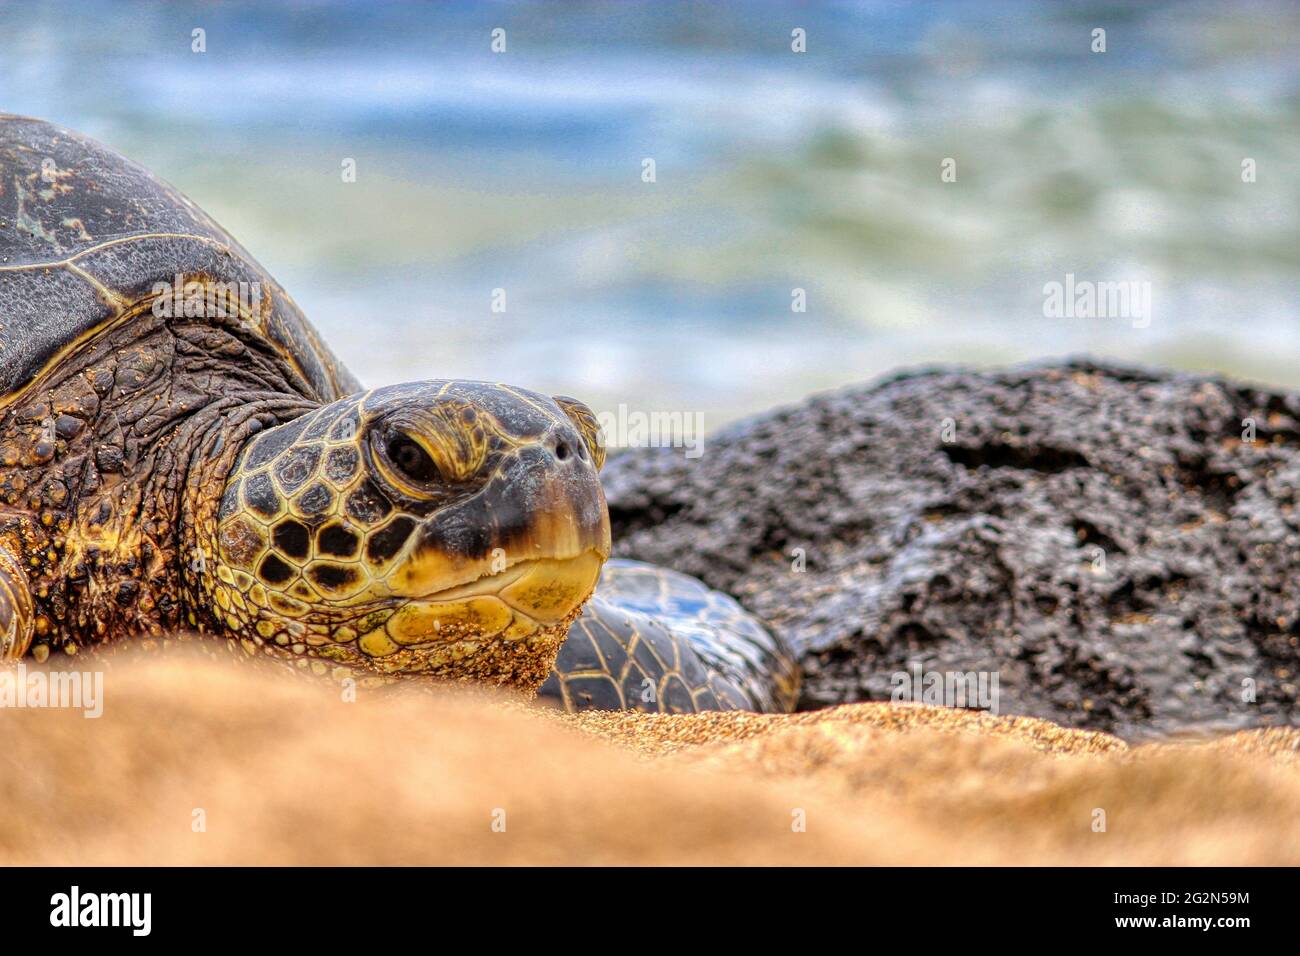 Green Sea Turtle (Honu) sun bathing in Maui, Hawaii Stock Photo